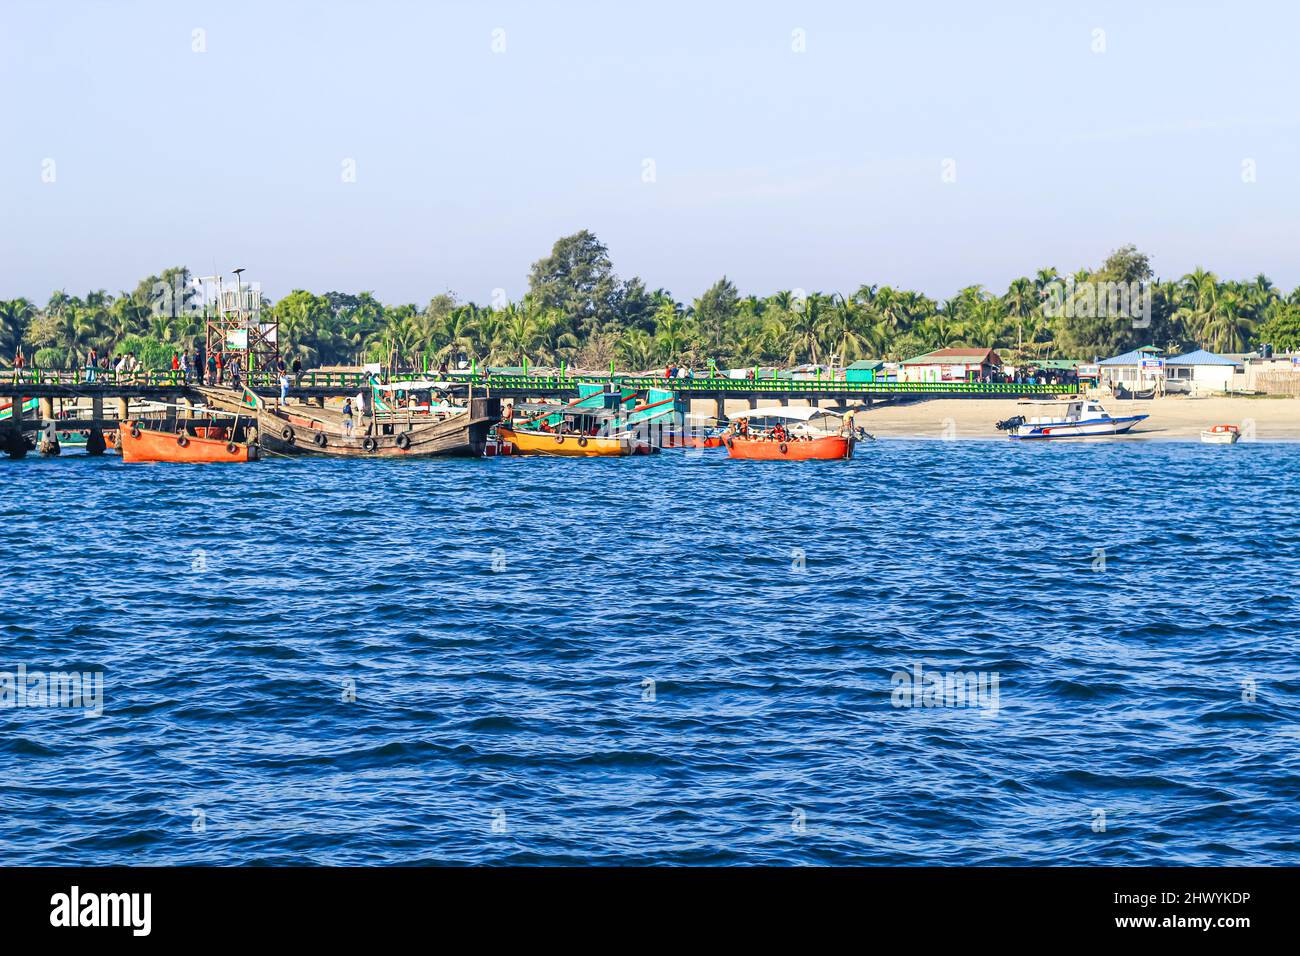 Molo turistico di St. Martin's Island, Bangladesh. Foto di un porto marittimo su un'isola con molte navi ancorate. Ideale per l'uso all'aperto. Foto Stock